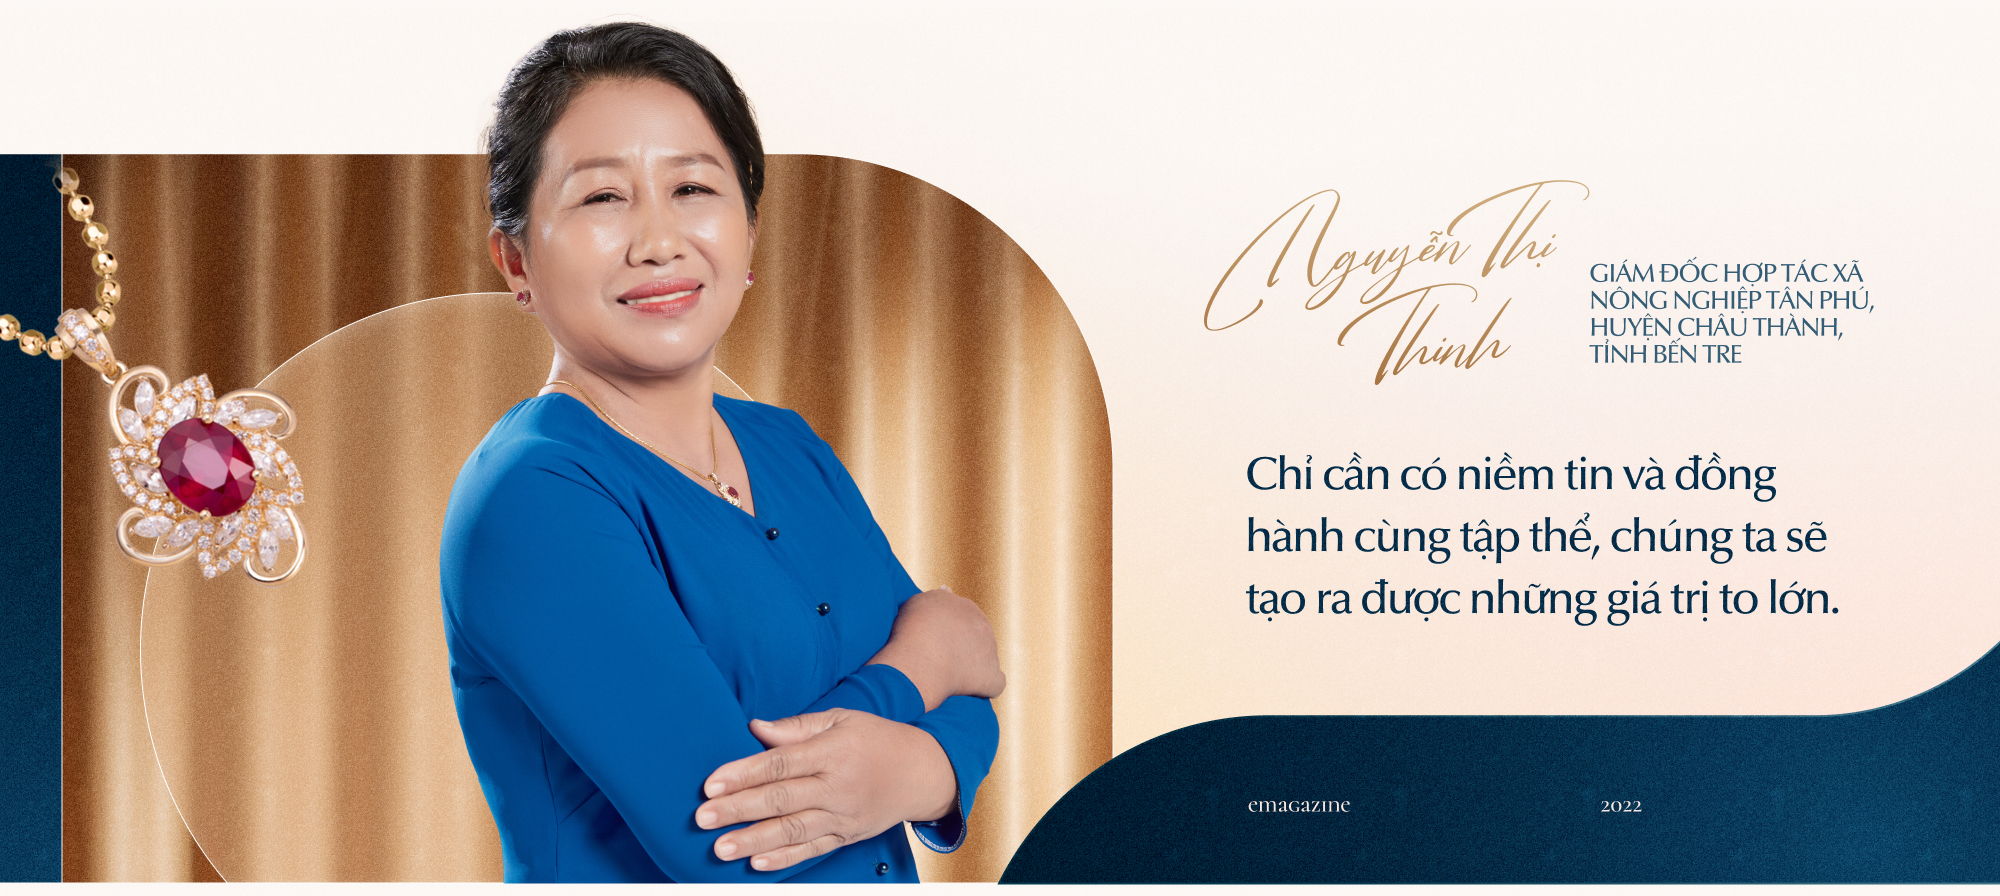 Thành công từ những khác biệt và câu chuyện truyền cảm hứng của 3 người phụ nữ Việt - Ảnh 6.